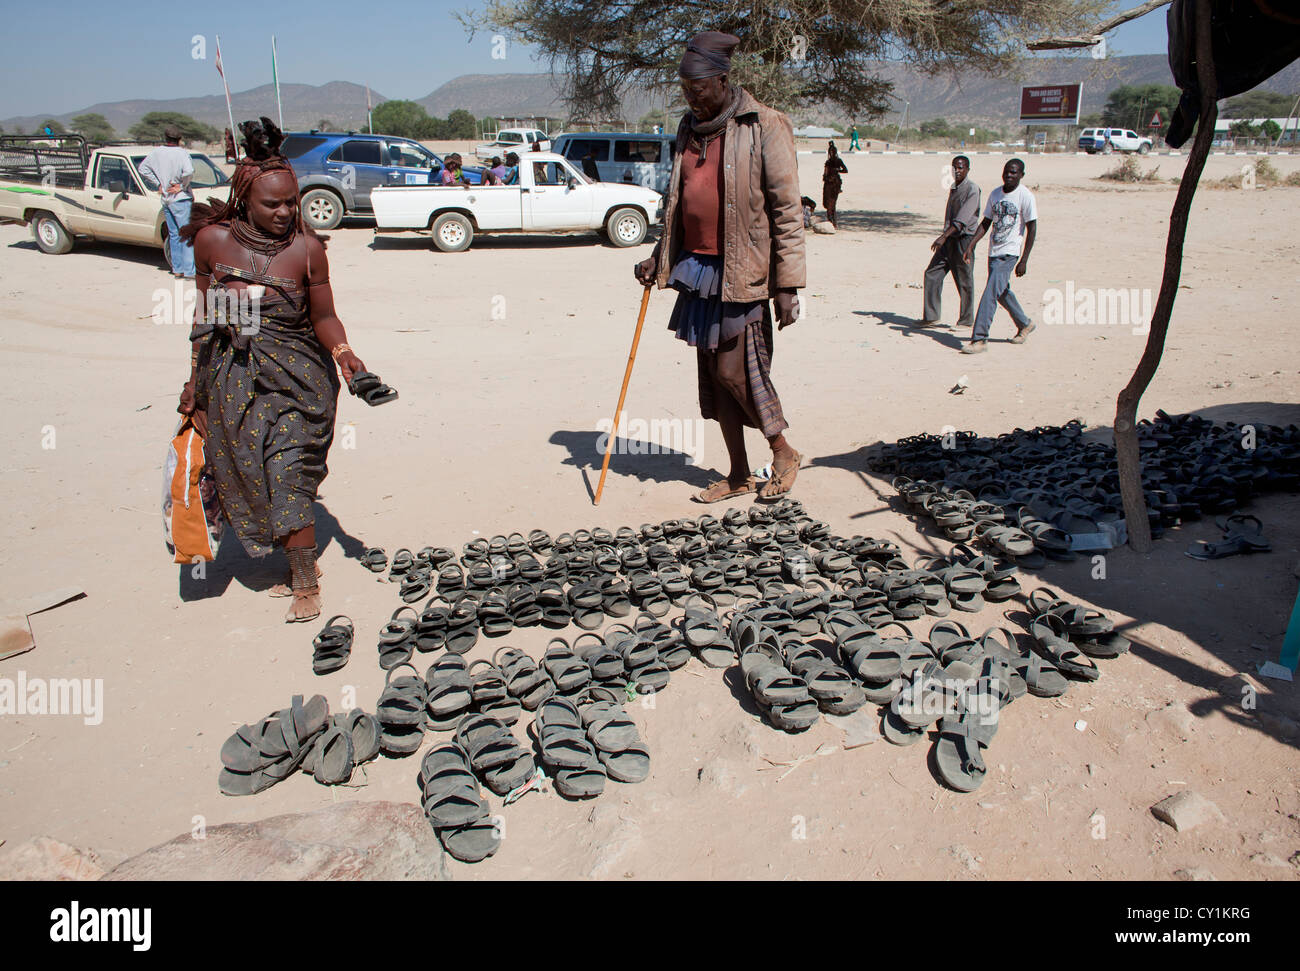 Chaussures fabriqués à partir de pneus, la Namibie Banque D'Images